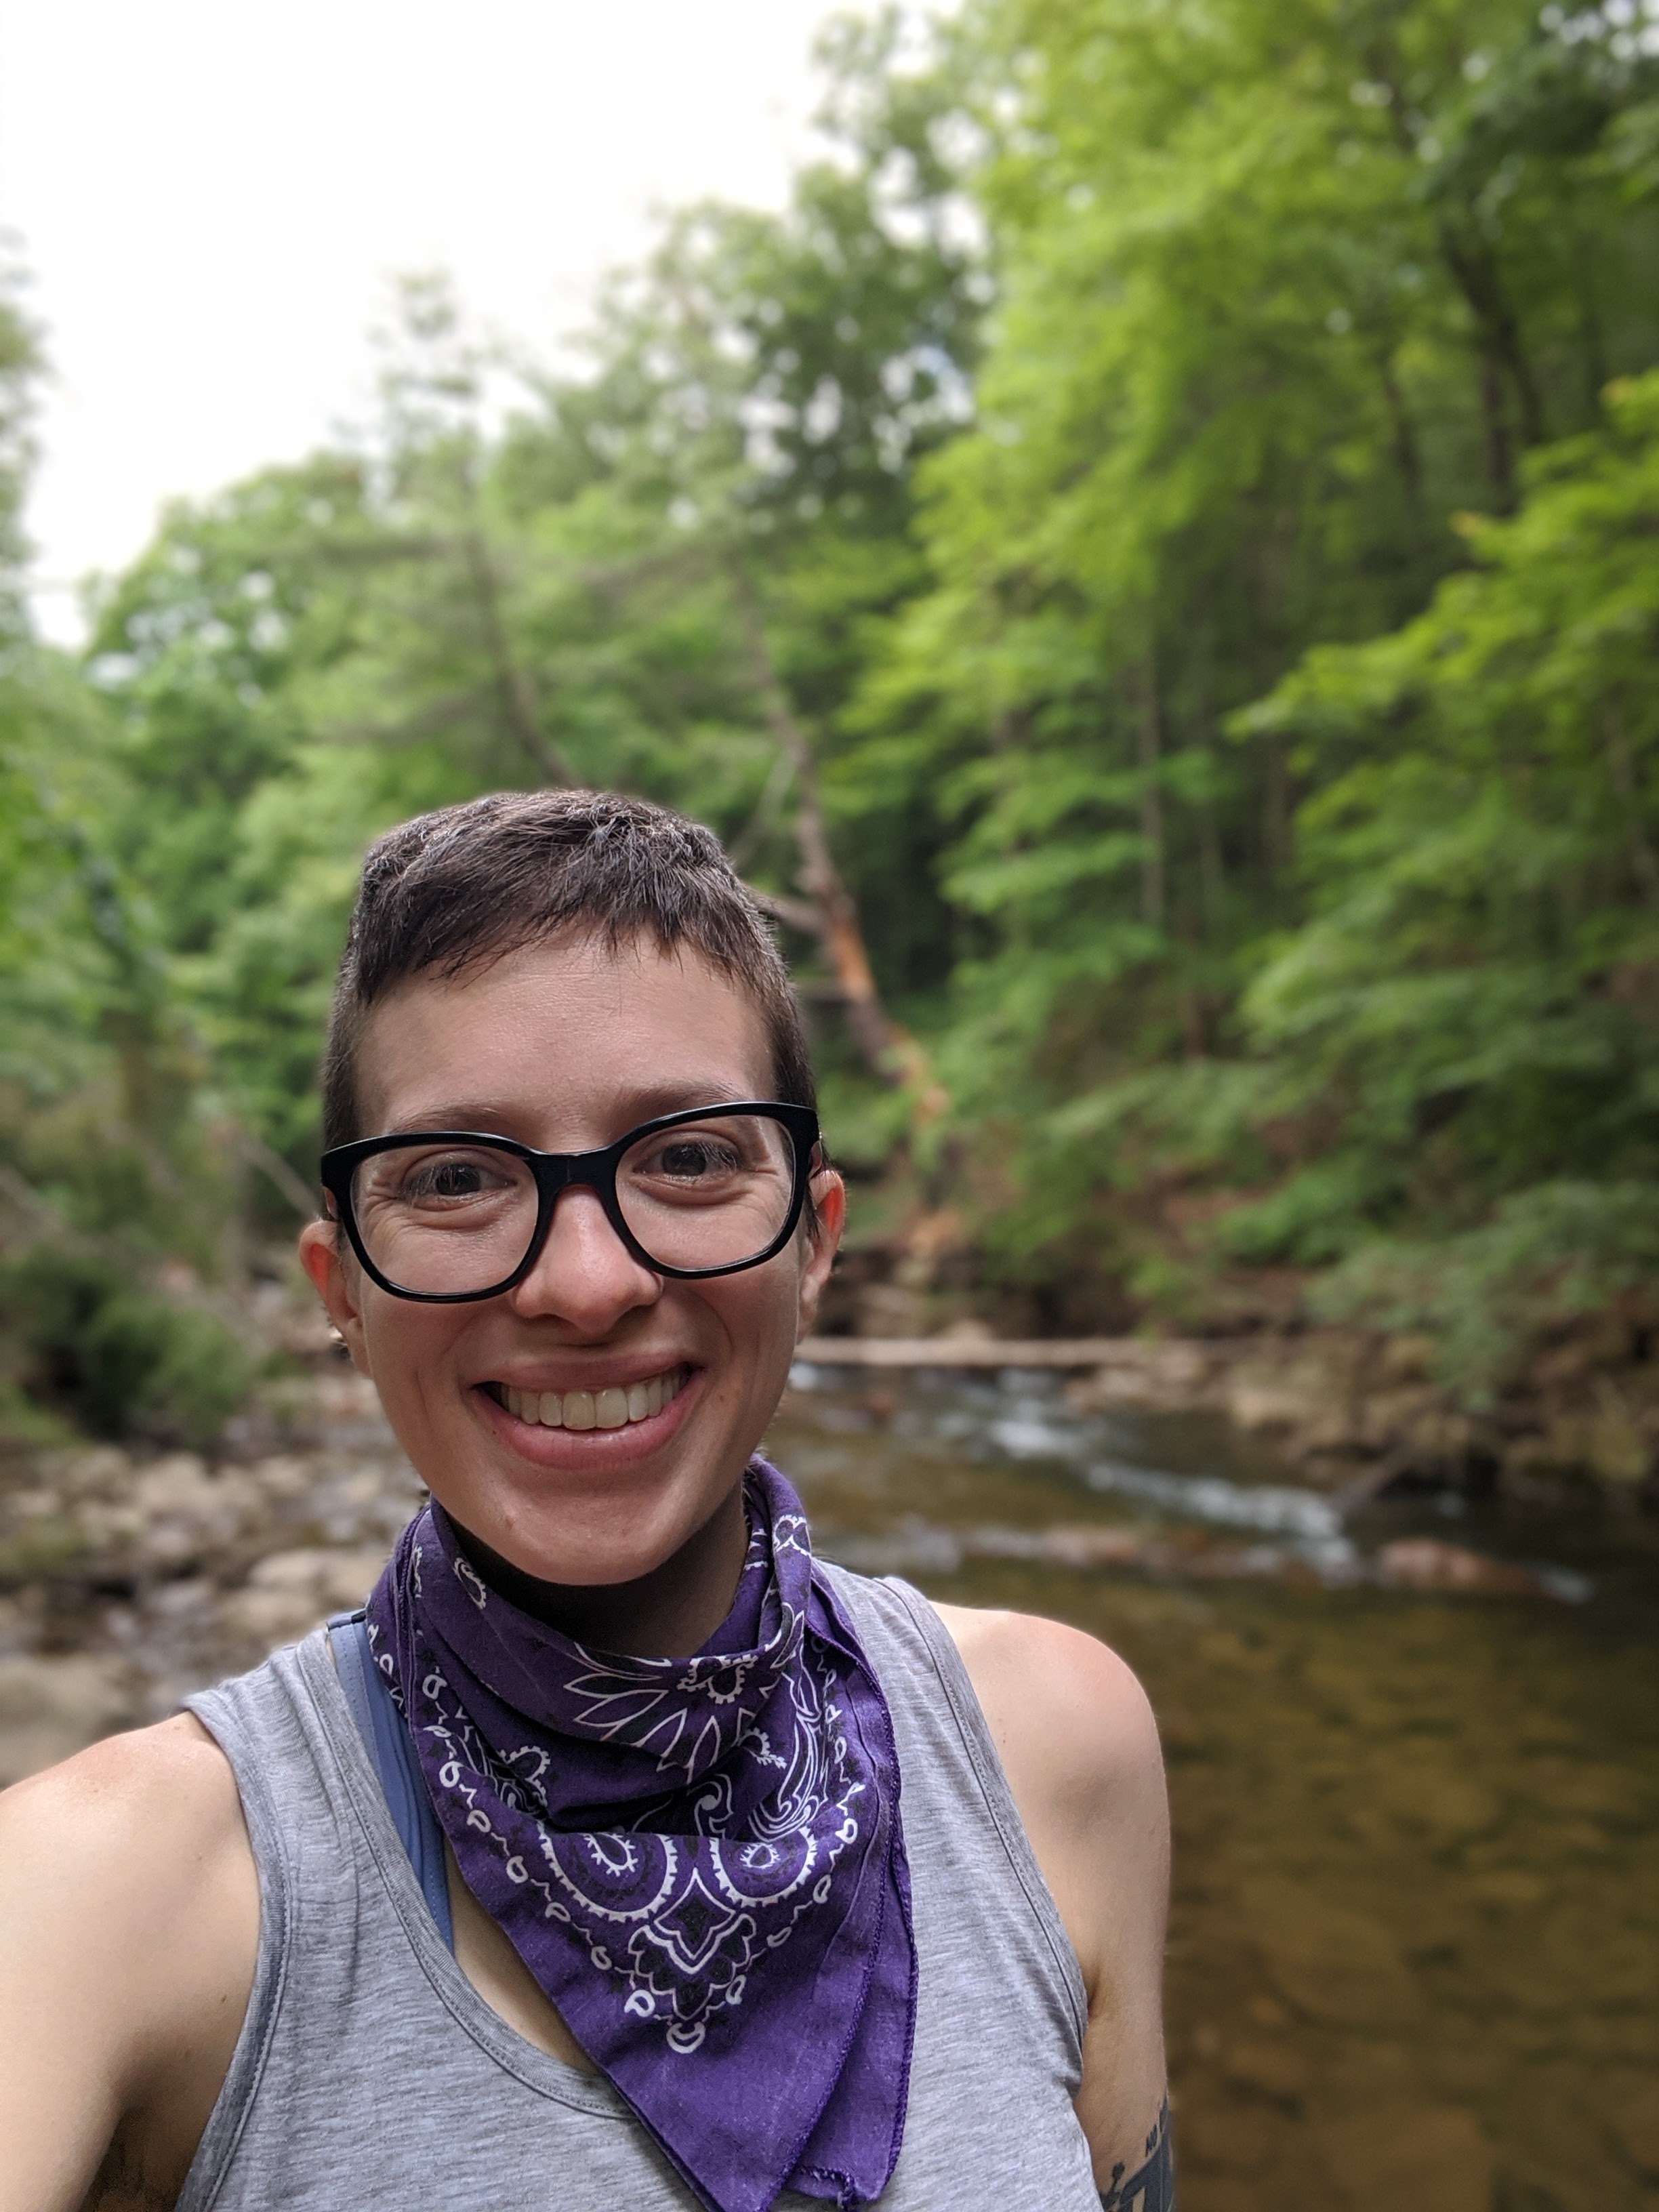 Perspectives editor Ashley E. Bowen has been enjoying exploring Pennsylvania's state parks recently.